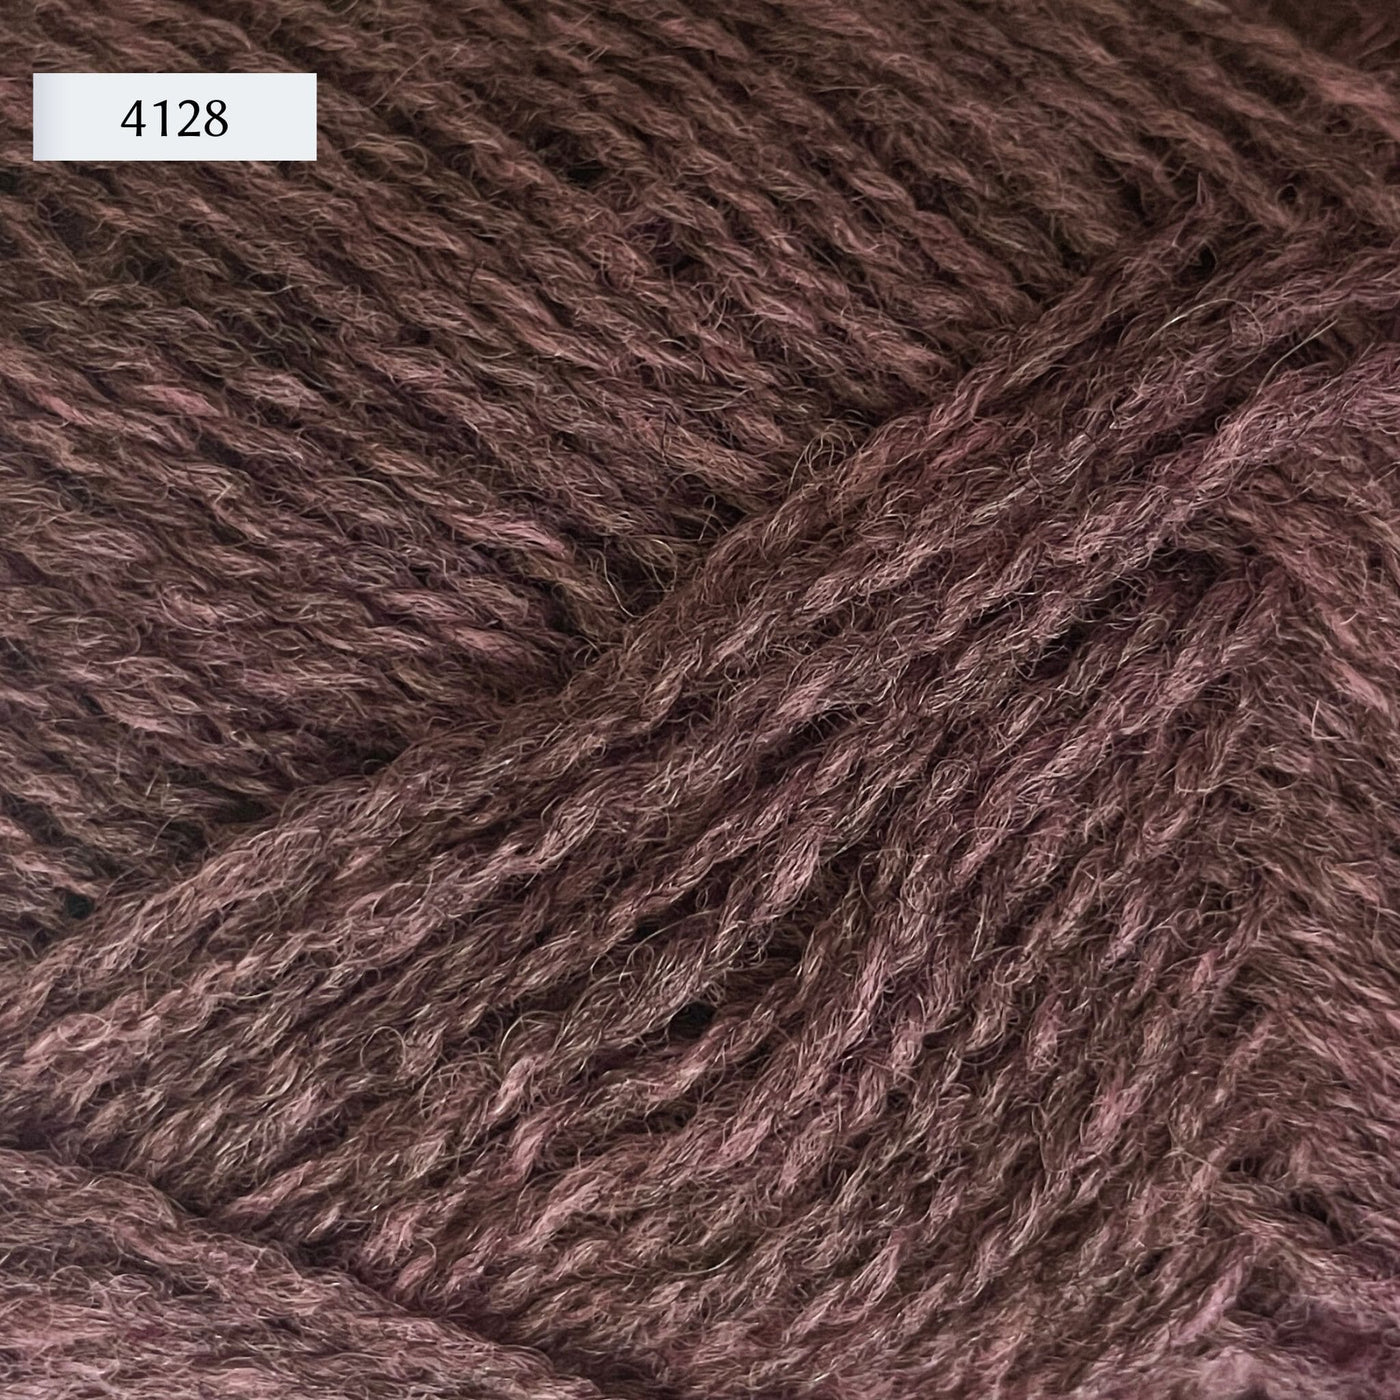 Rauma Finullgarn, a fingering/sport weight yarn, in color 4128, a heathered dark lavender